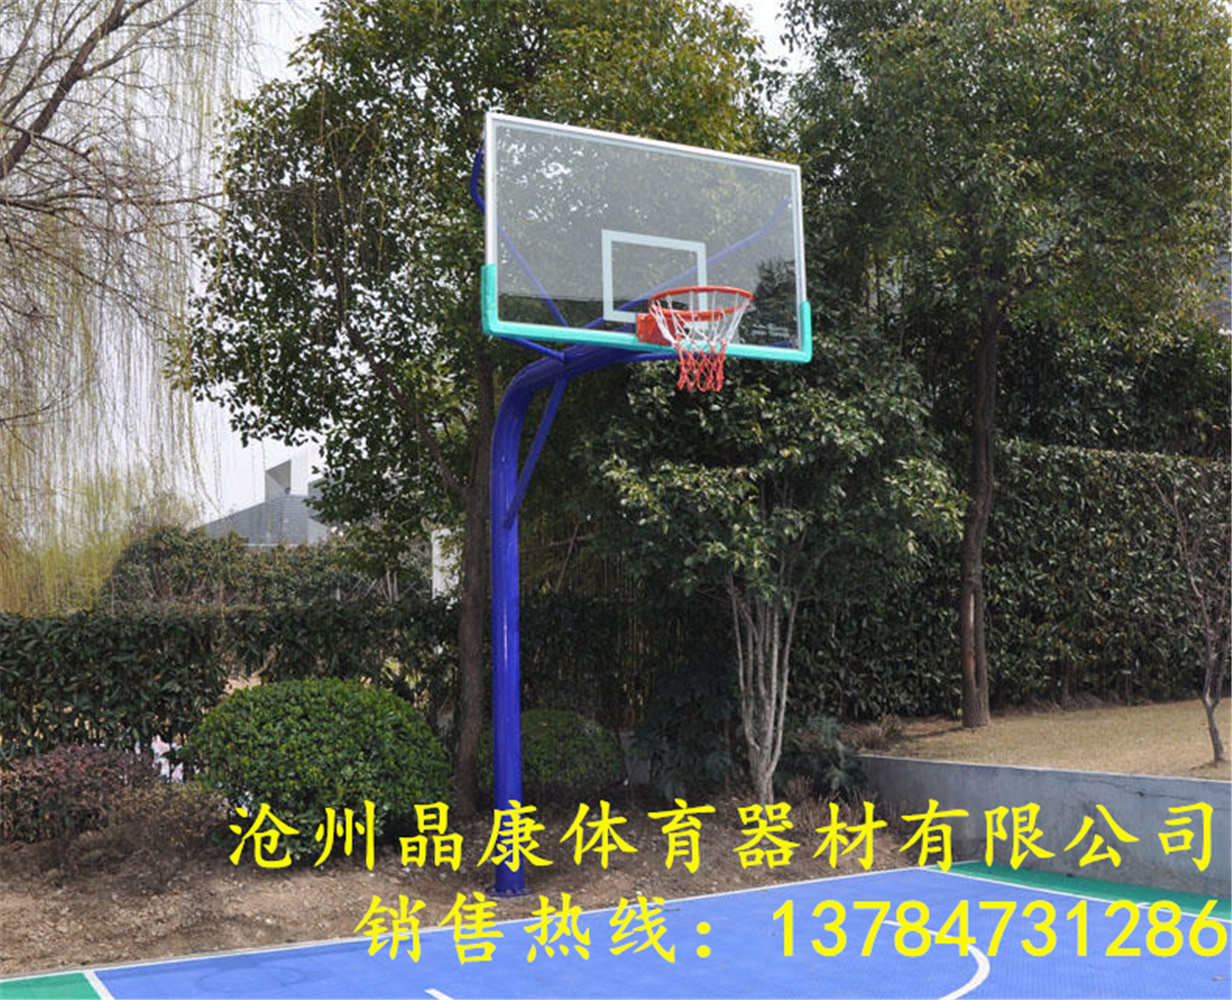 江苏晶康牌配备钢化玻璃篮球板儿童篮球架价格实惠